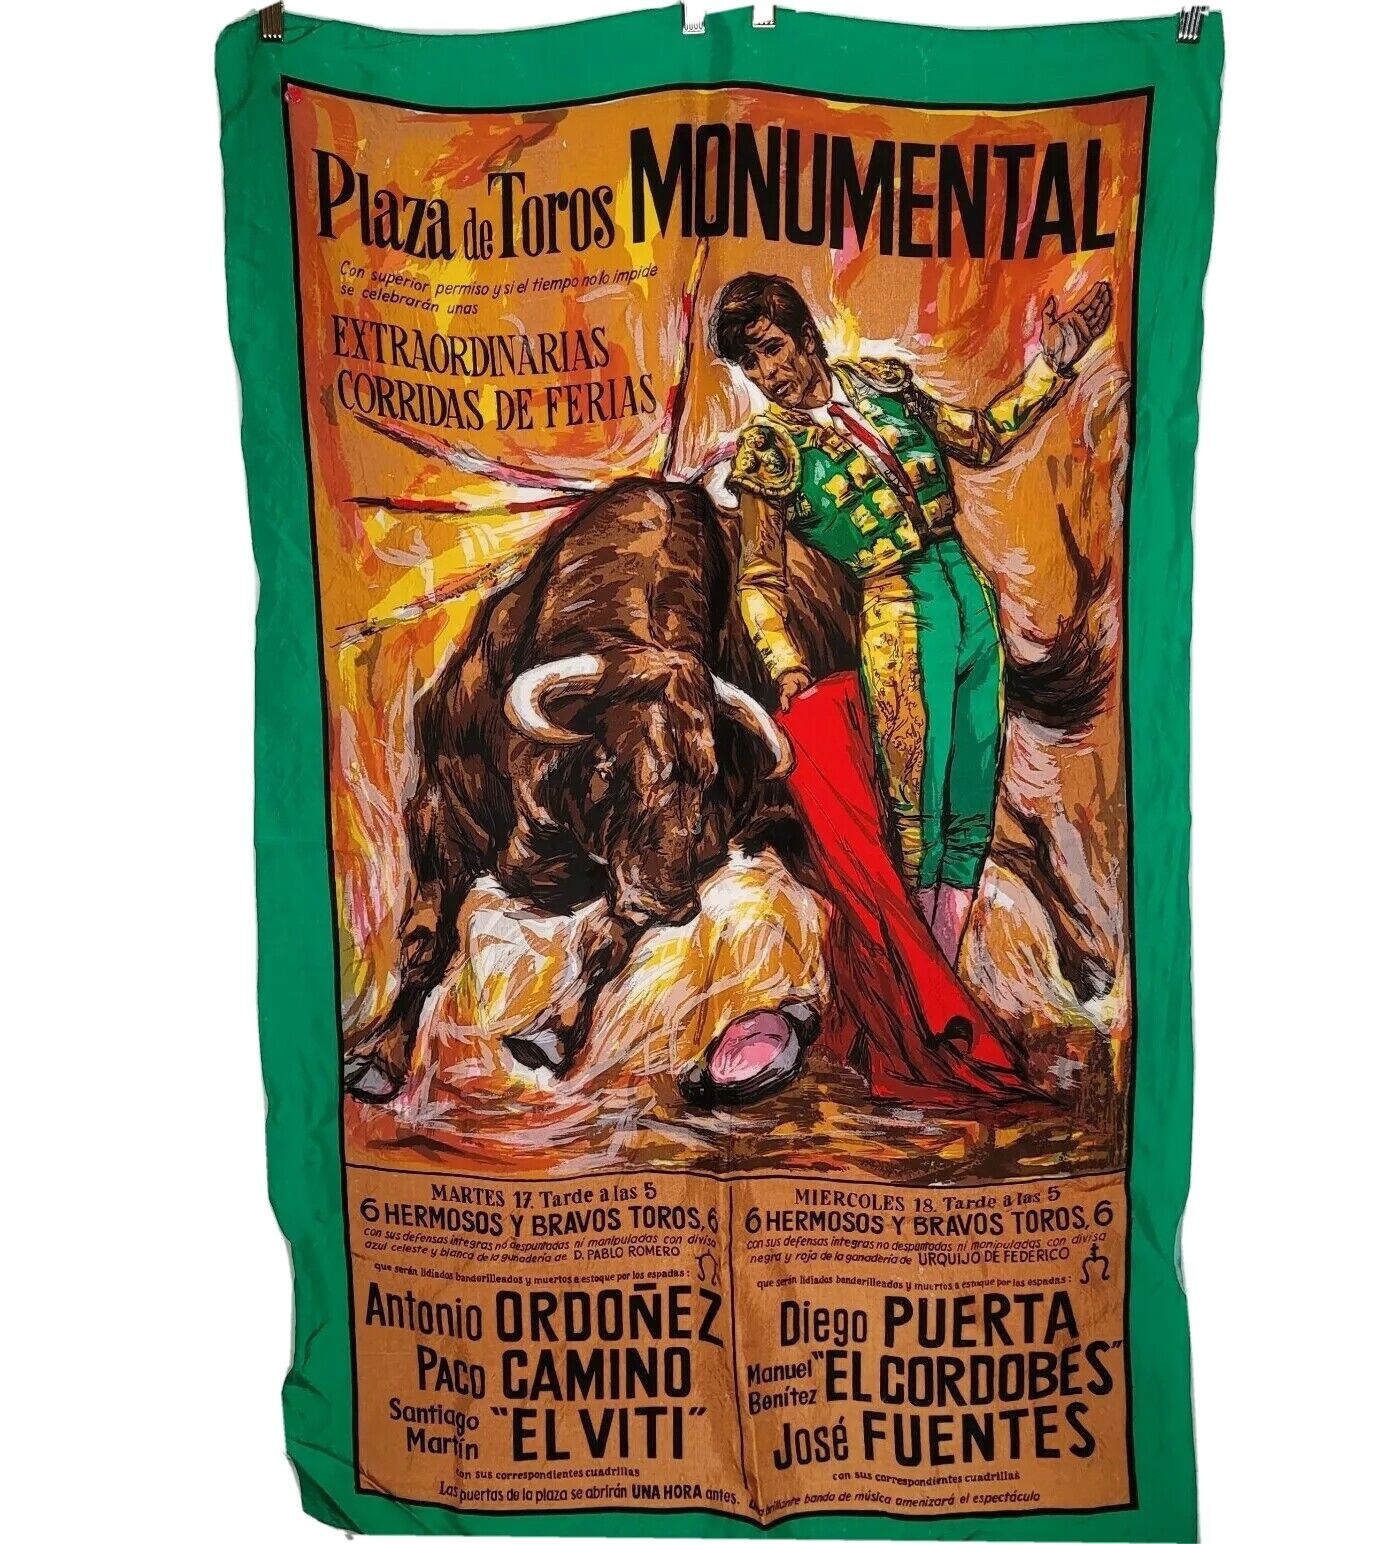 Vintage Plaza de Toros Monumental Matador Bull Fighter Poster Advertising